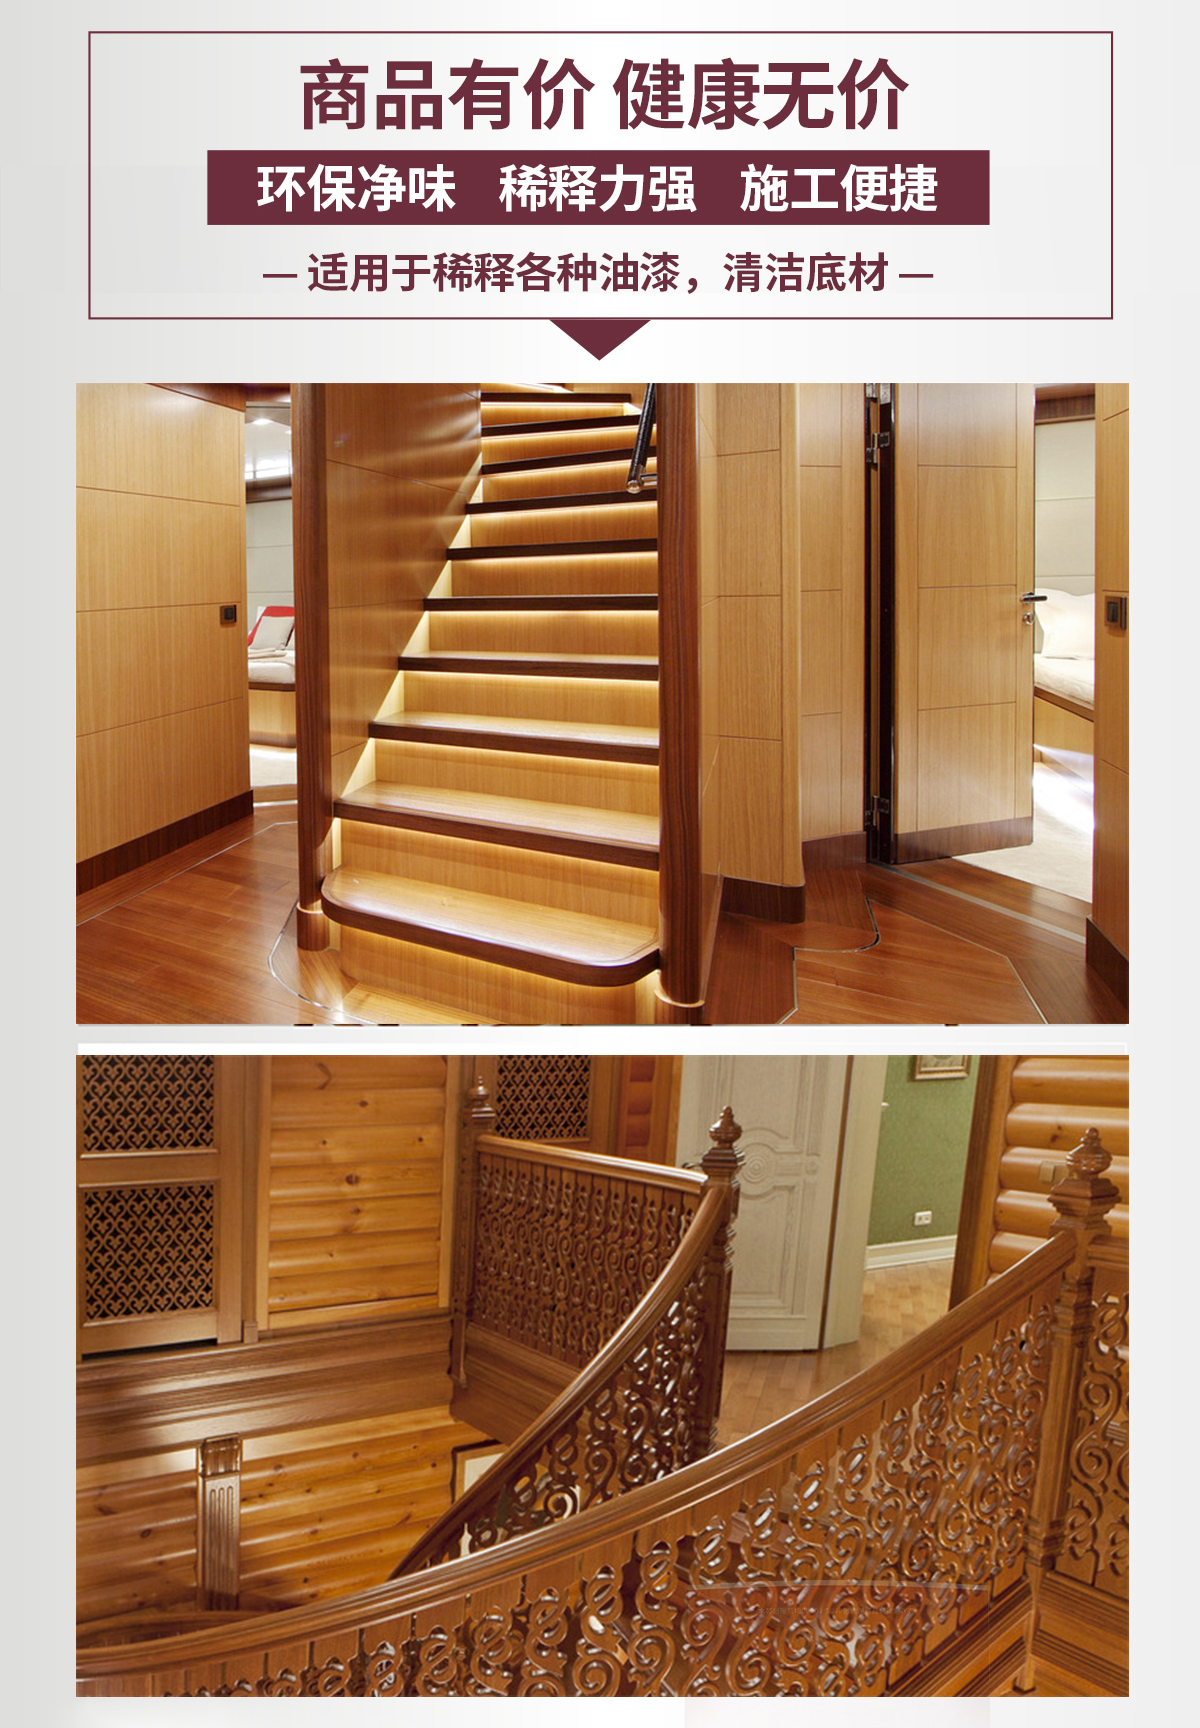 米奇漆高档楼梯系列家具漆-长图详情页_10.jpg